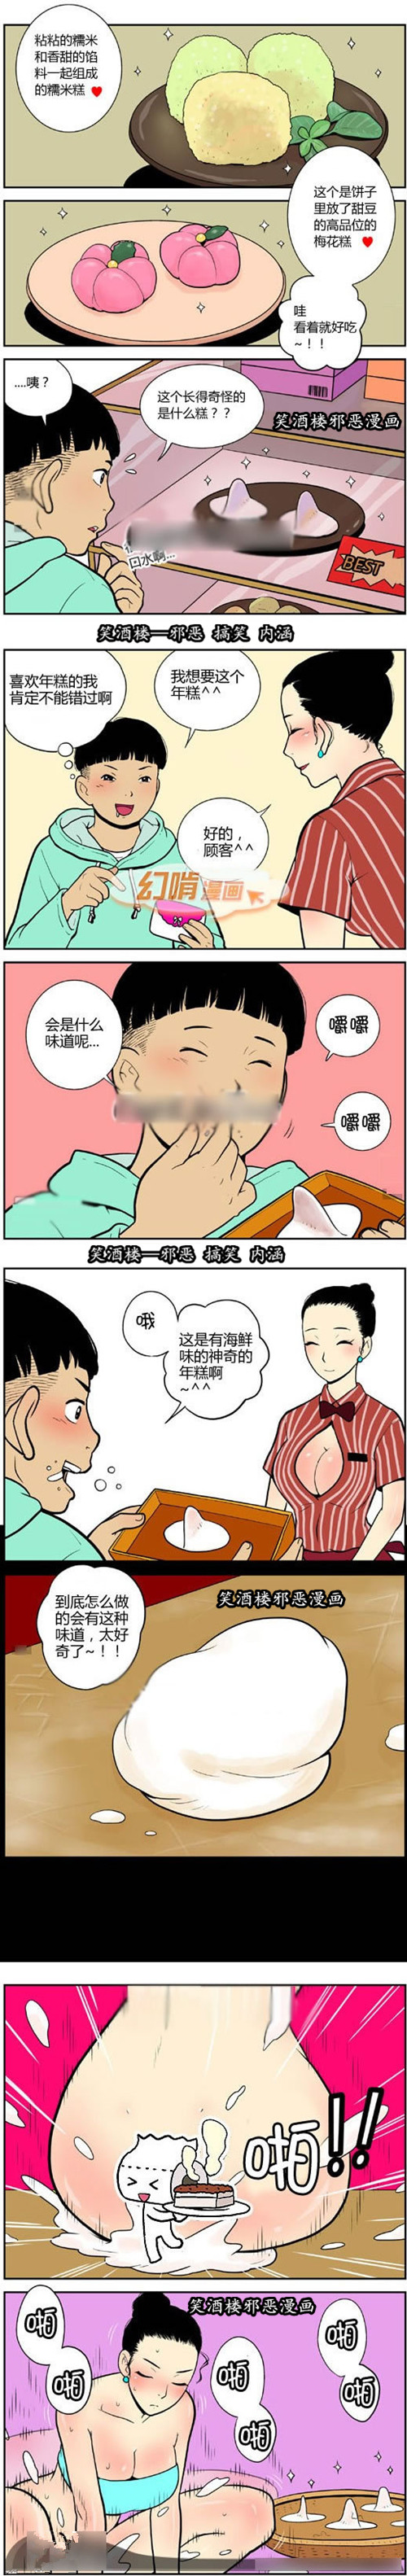 色系漫画19禁全集污漫画|海鲜味的年糕